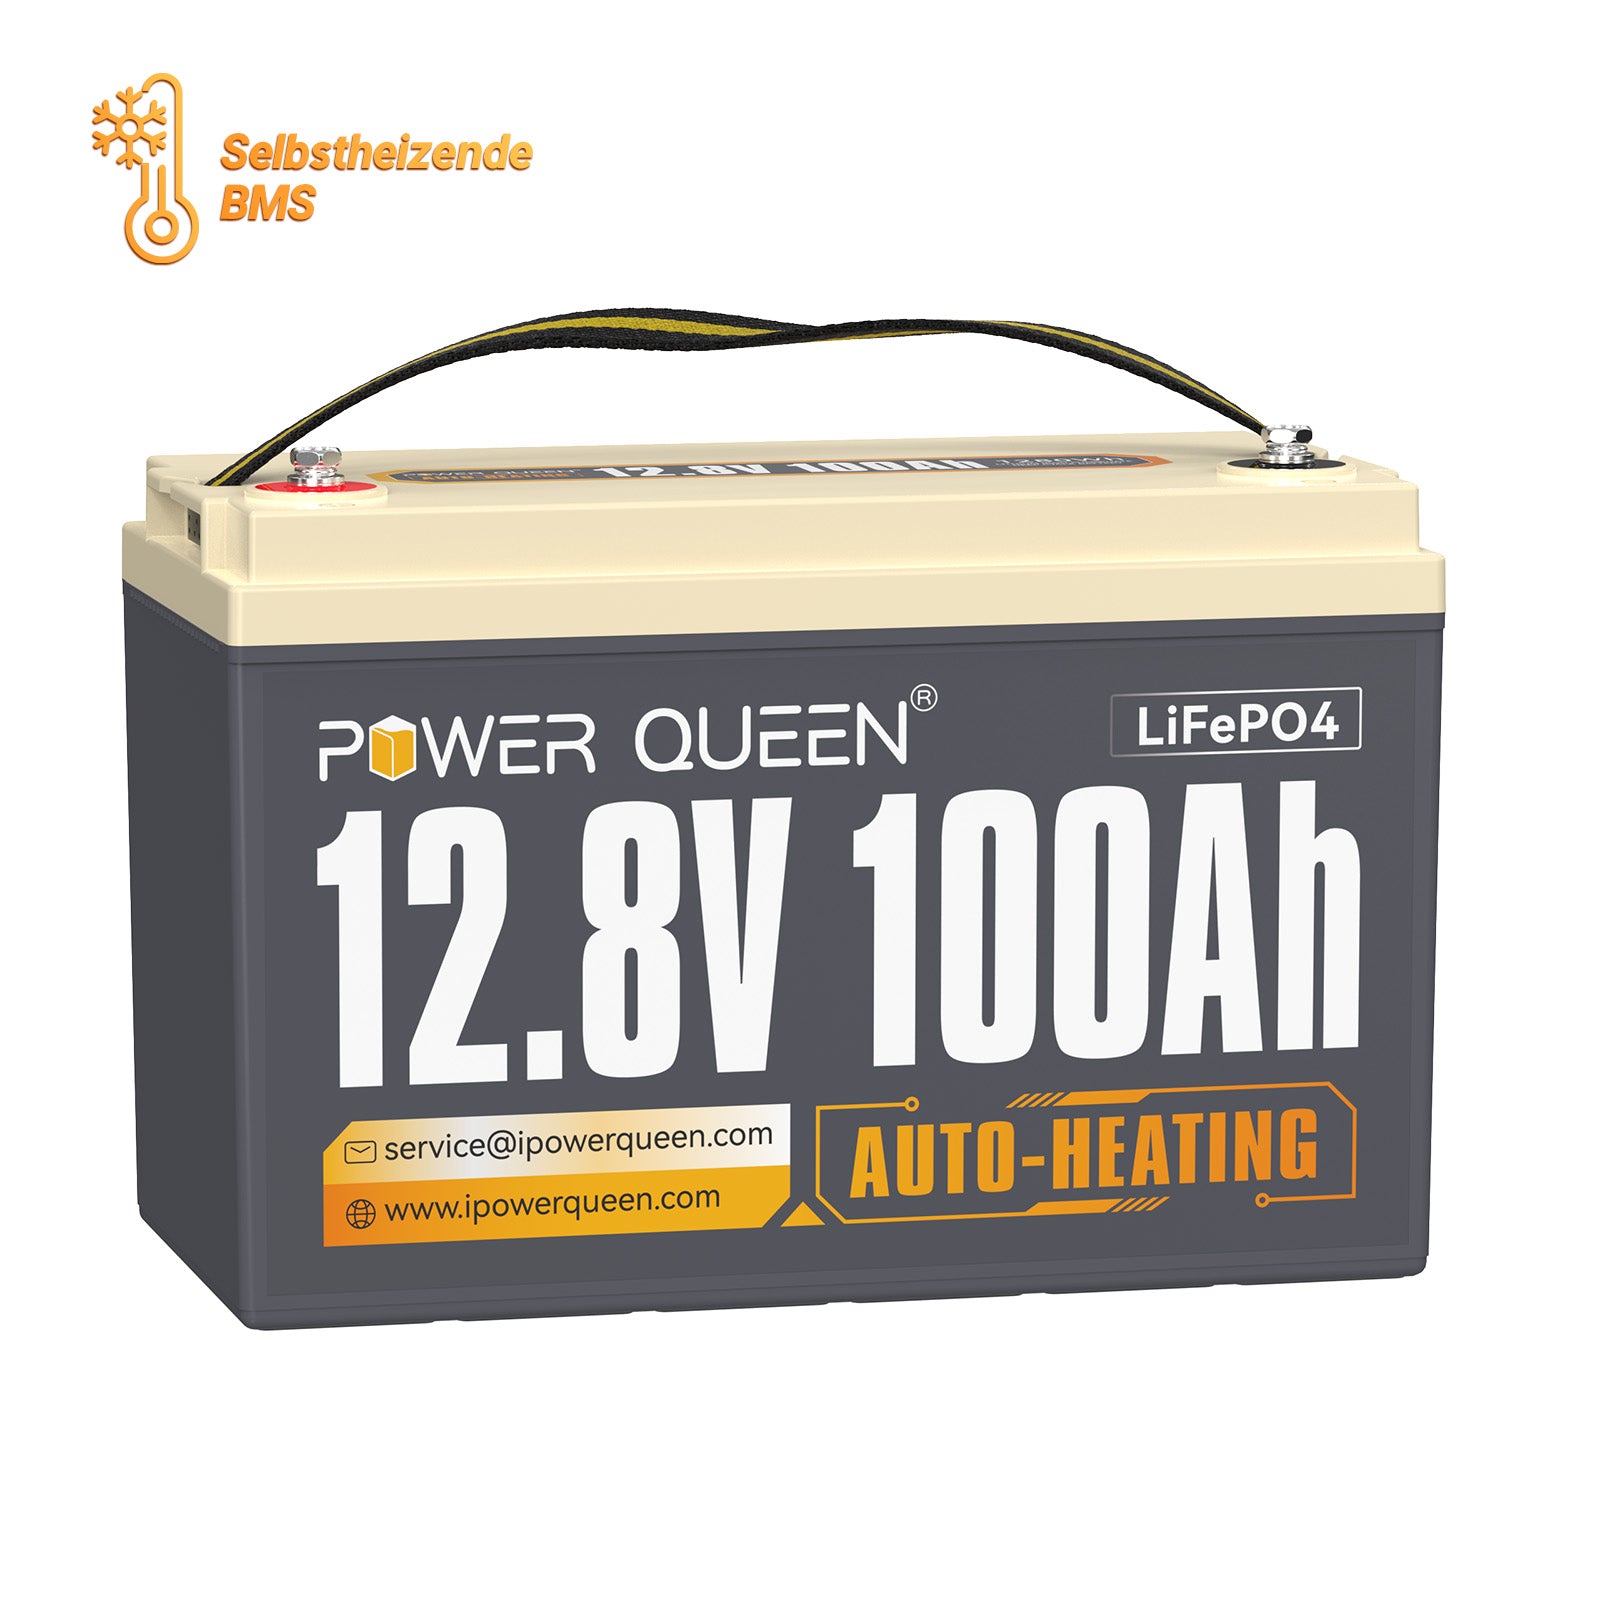 【0% IVA】Batería LiFePO4 autocalentable Power Queen de 12,8 V y 100 Ah, BMS integrado de 100 A